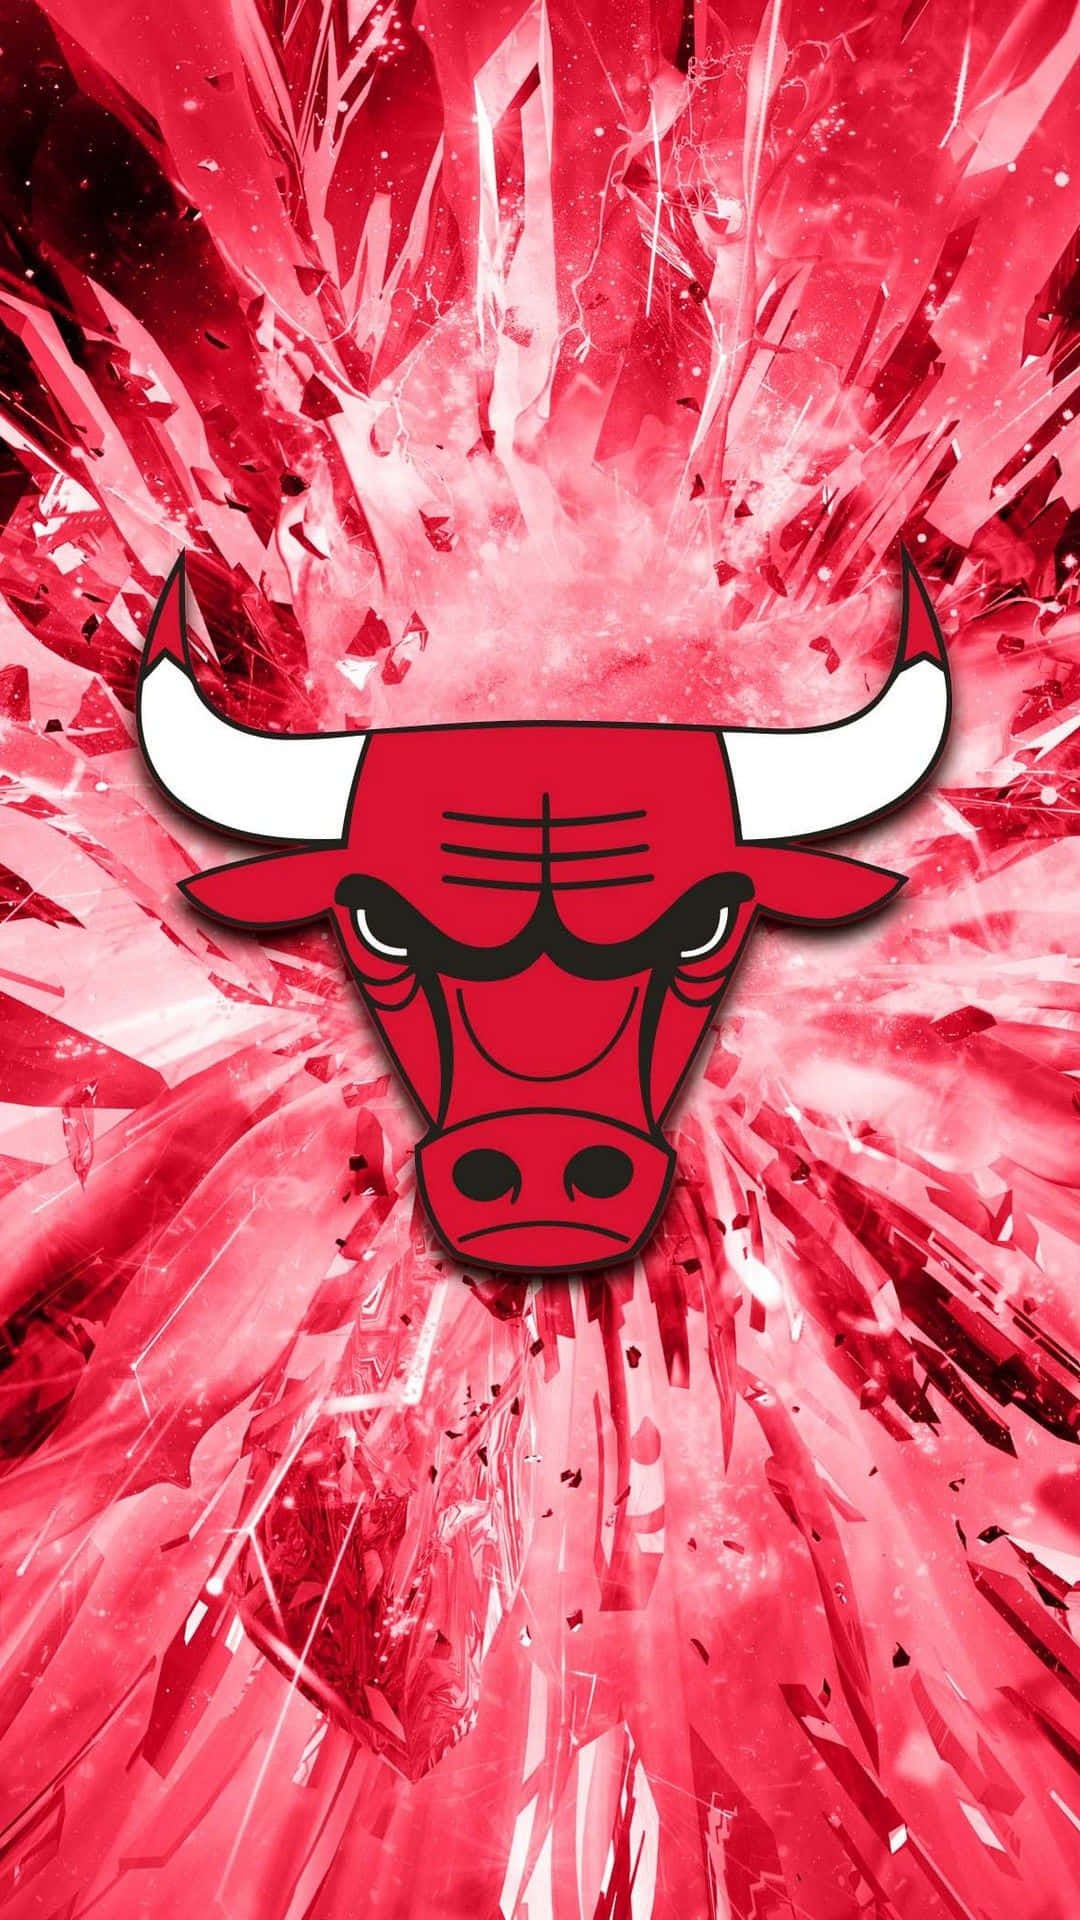 Upplevhur Det Känns Att Vara En Chicago Bulls Fan Med Detta Officiella Mobilskal. Wallpaper